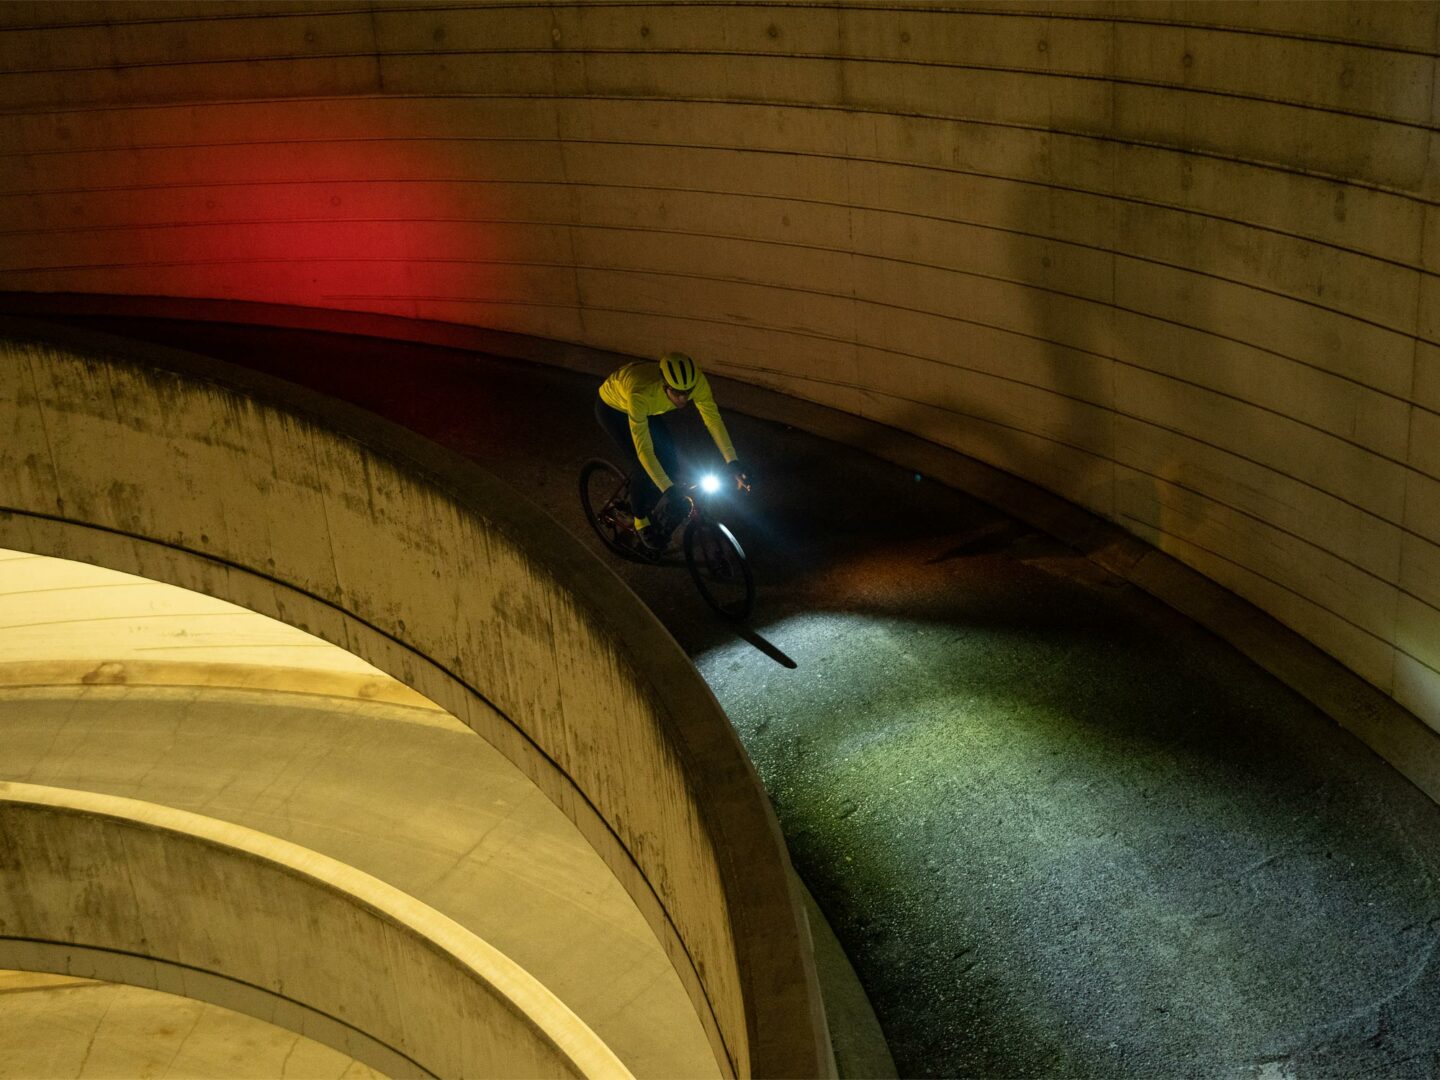 Et bilde av en syklist ovenfra som sykler i mørket med lysene på